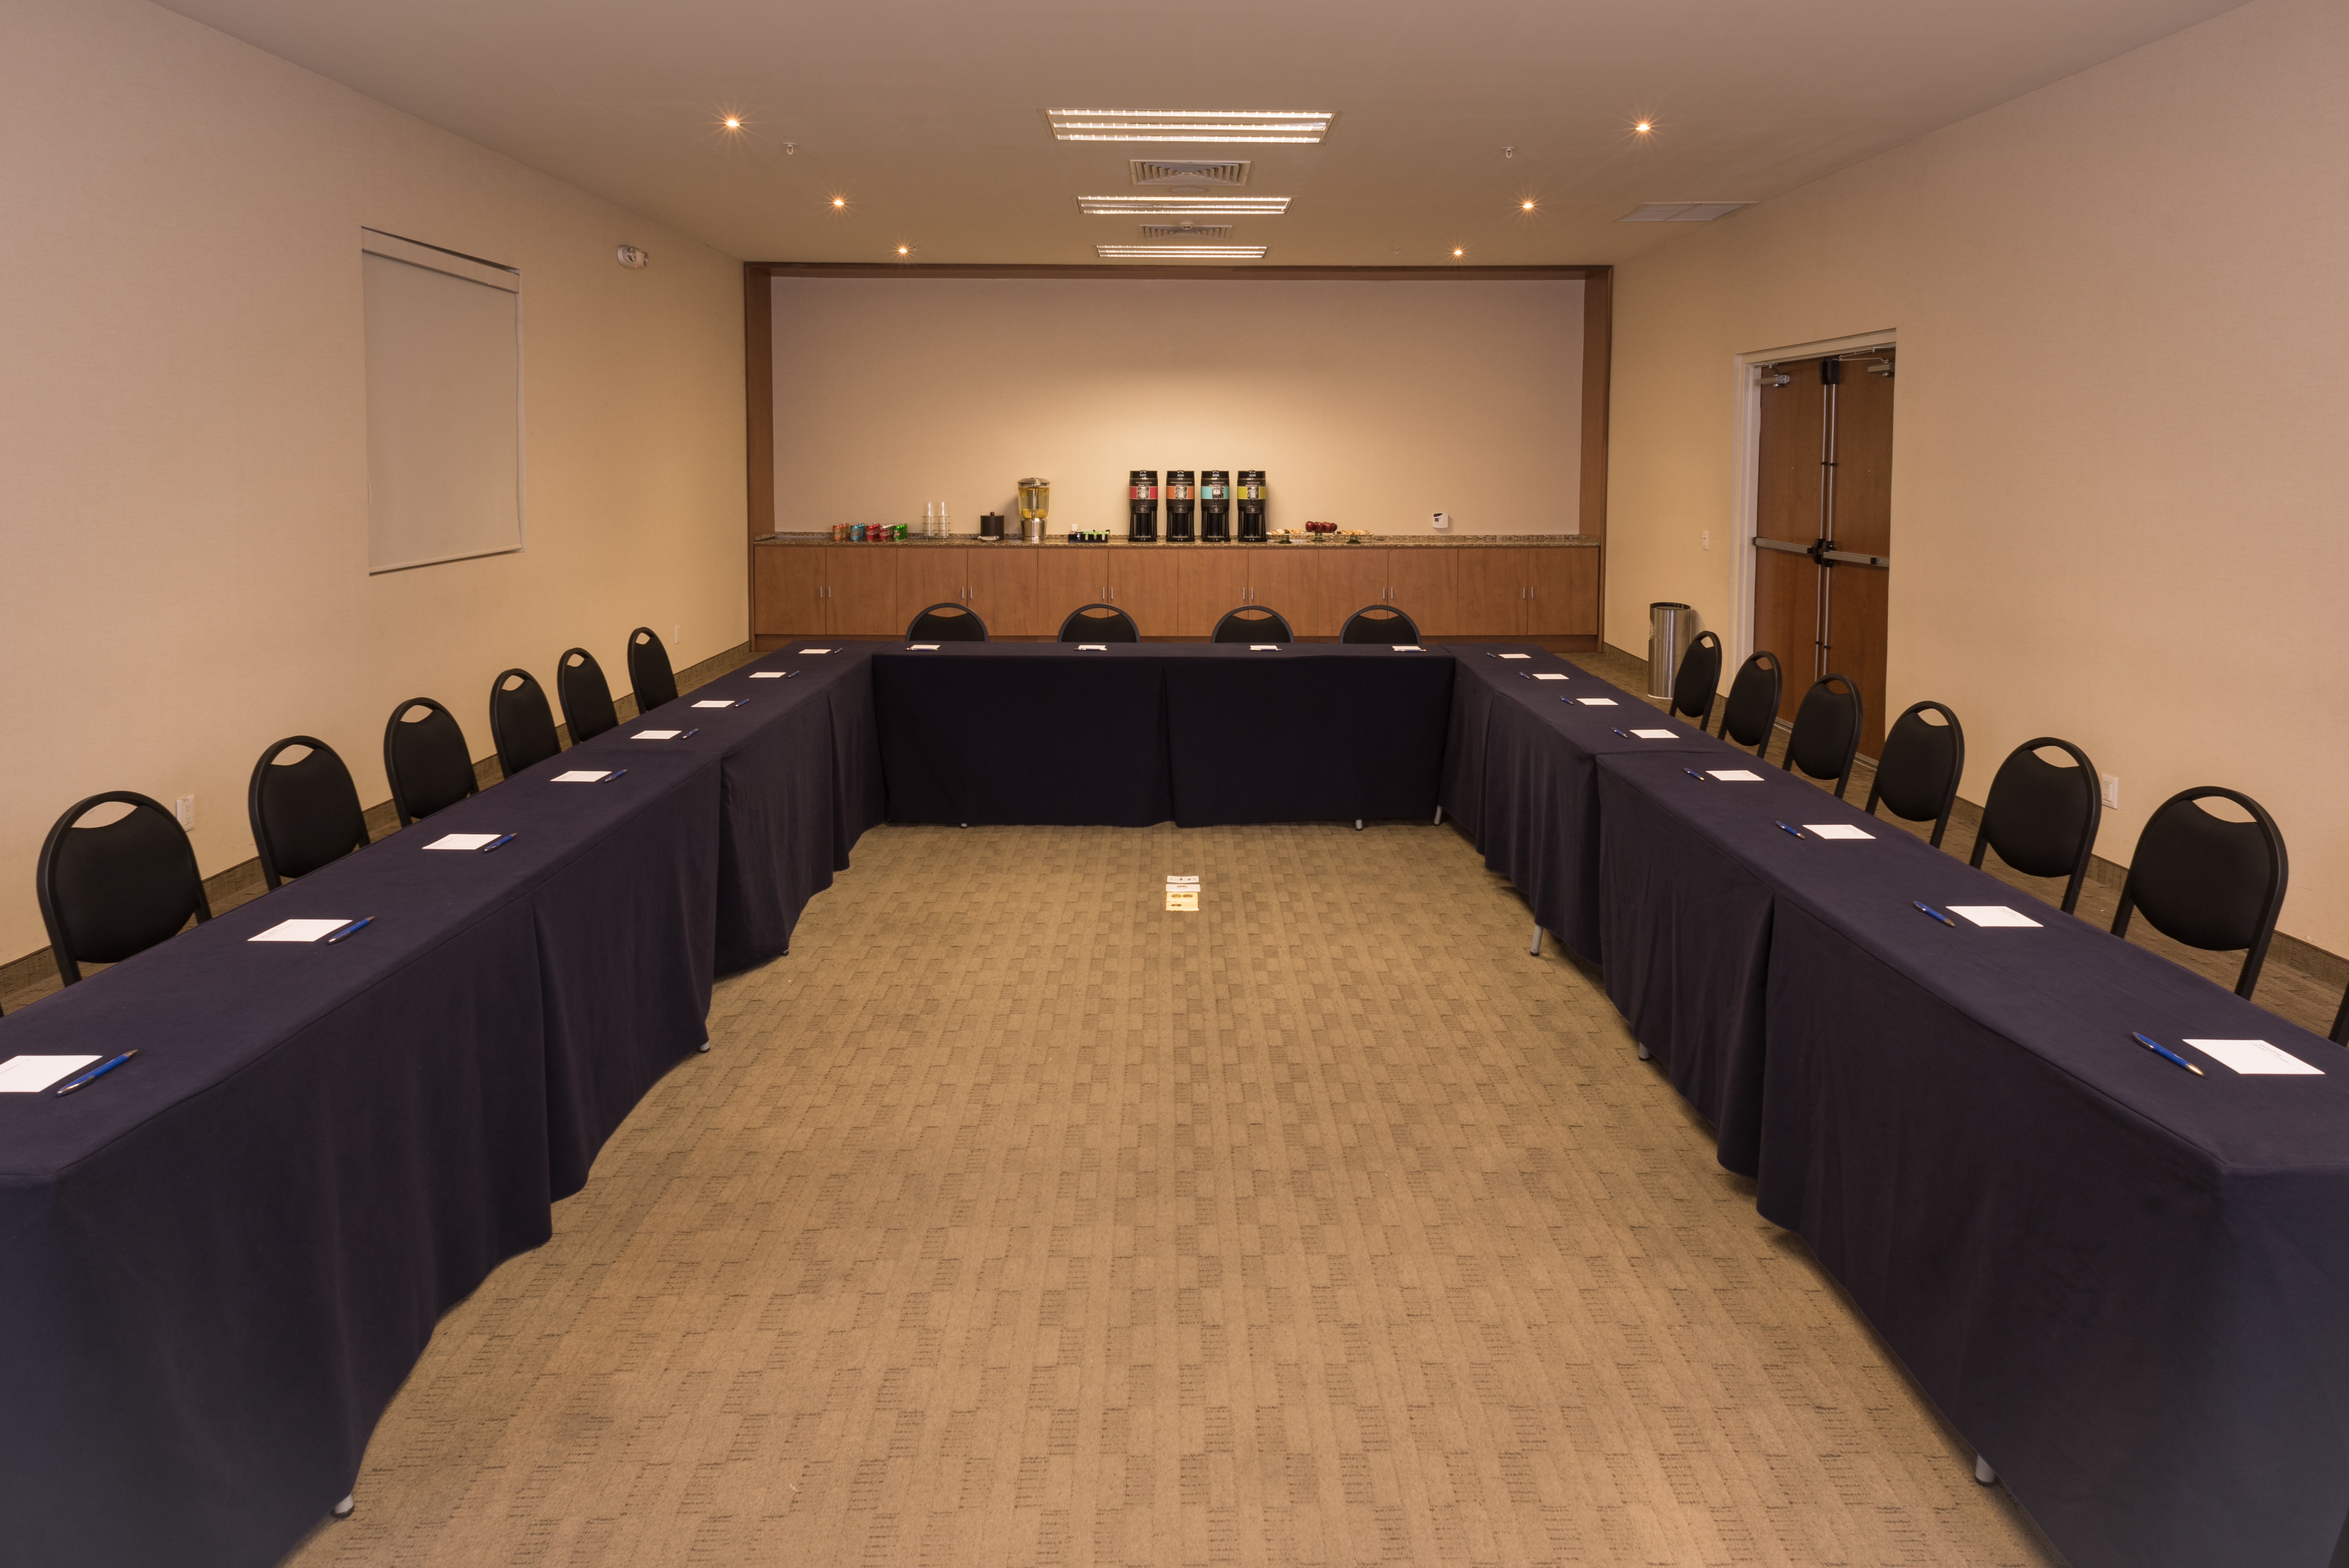 Sala de reuniones con mesas en forma de U